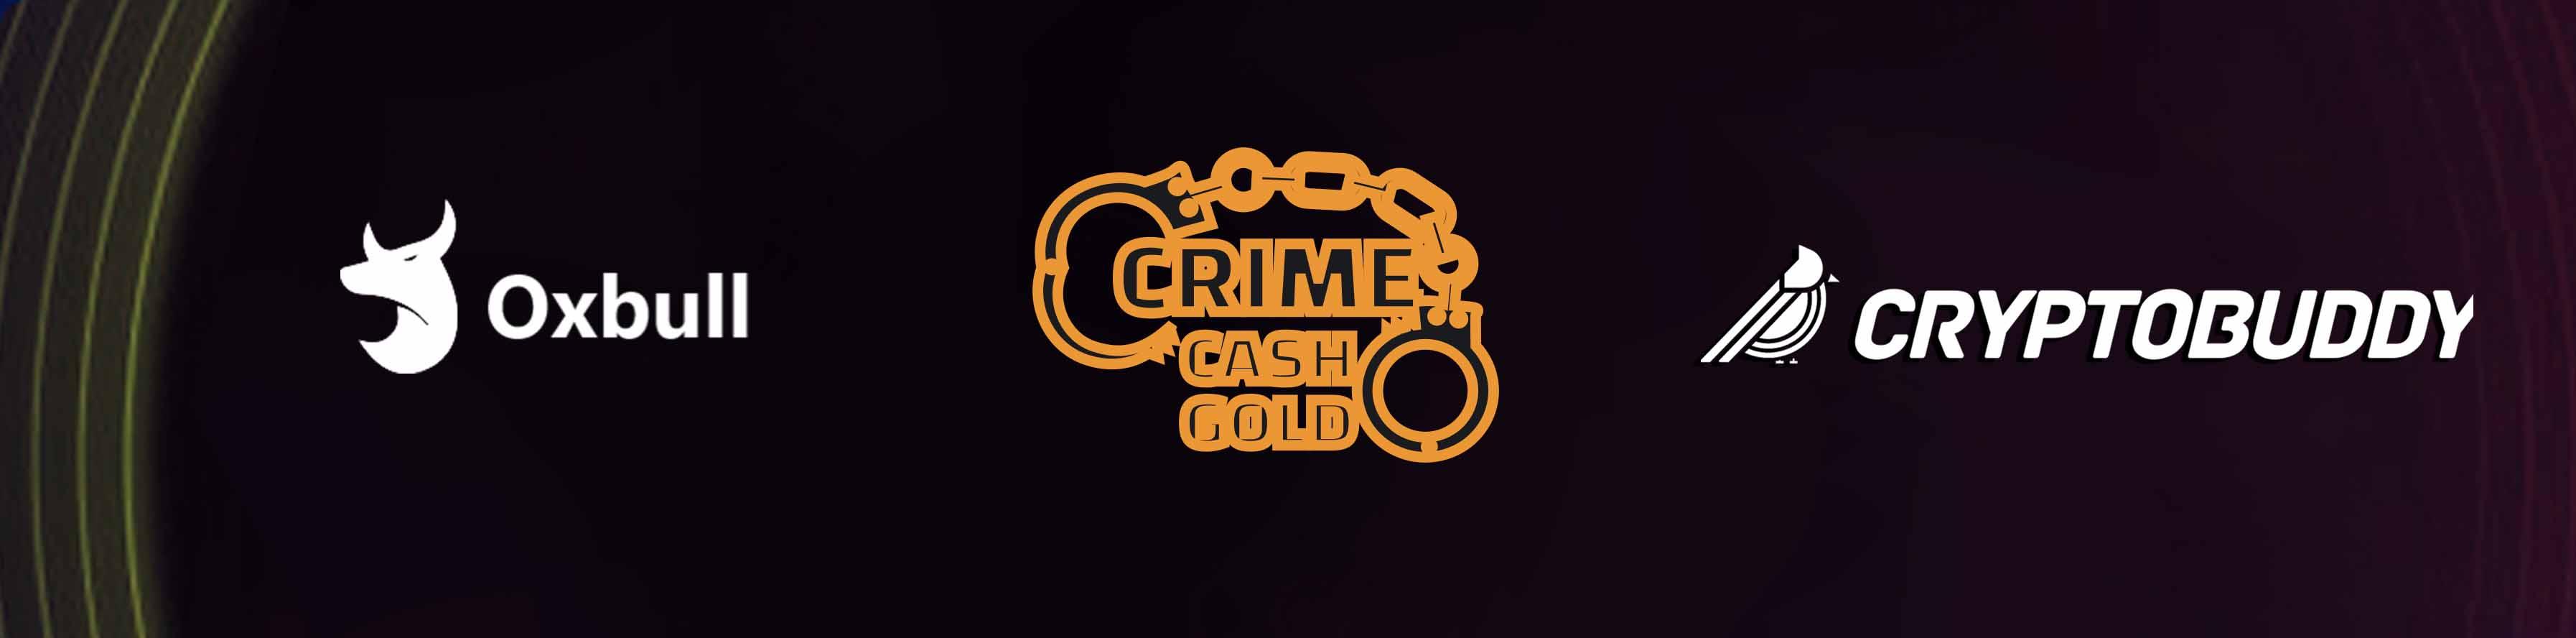 CrimeCash Oxbull IDO - Whitelist for Cryptobuddy Community